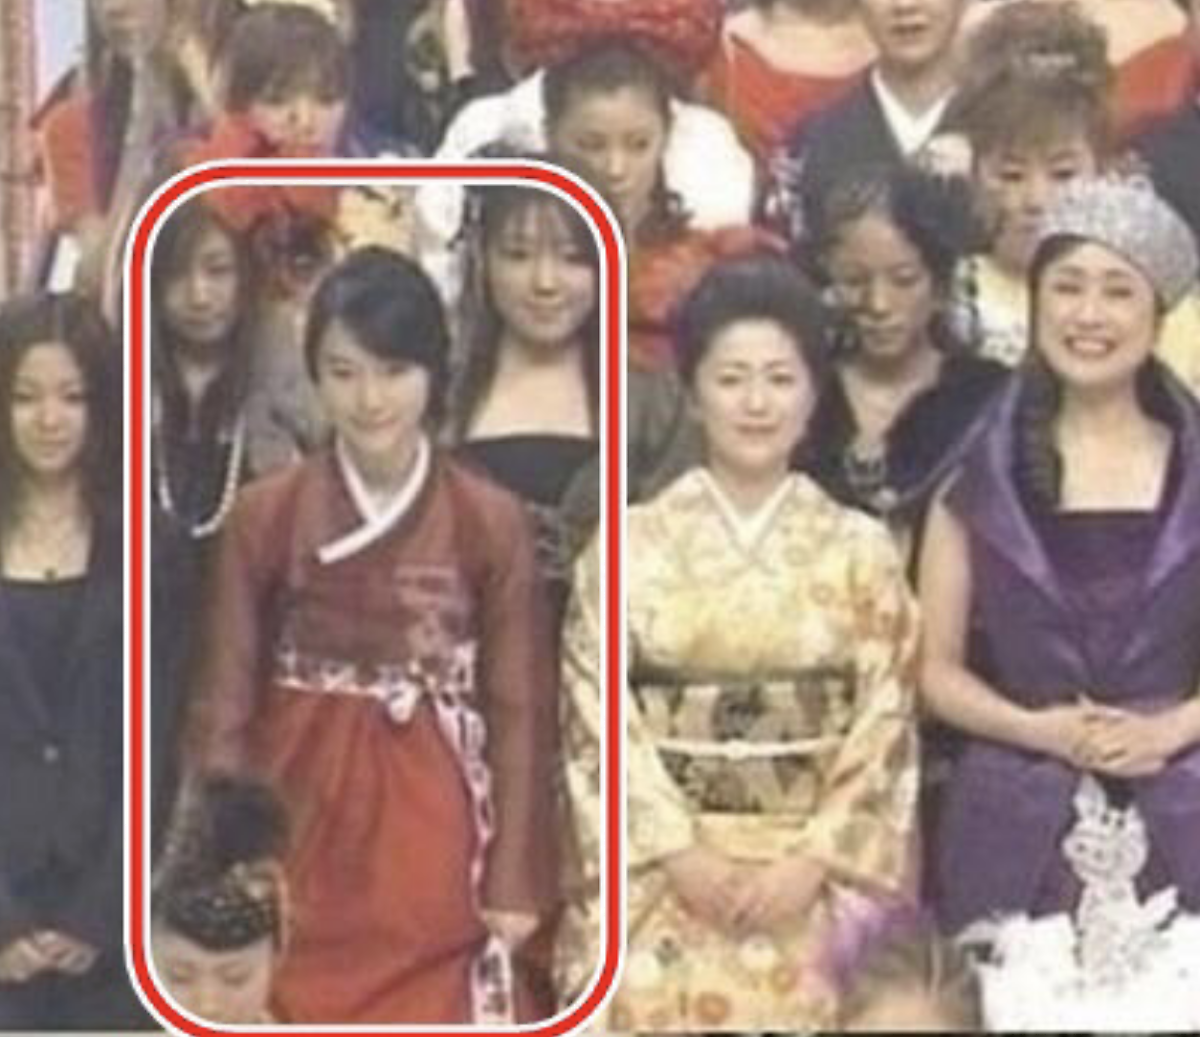 "저는 대한민국 연예인 입니다." 무조건 기모노 입고 오라는 일본 방송국의 갑질에도 몰래 한복을 챙겨가 방송에 출연한 연예인의 '정체'